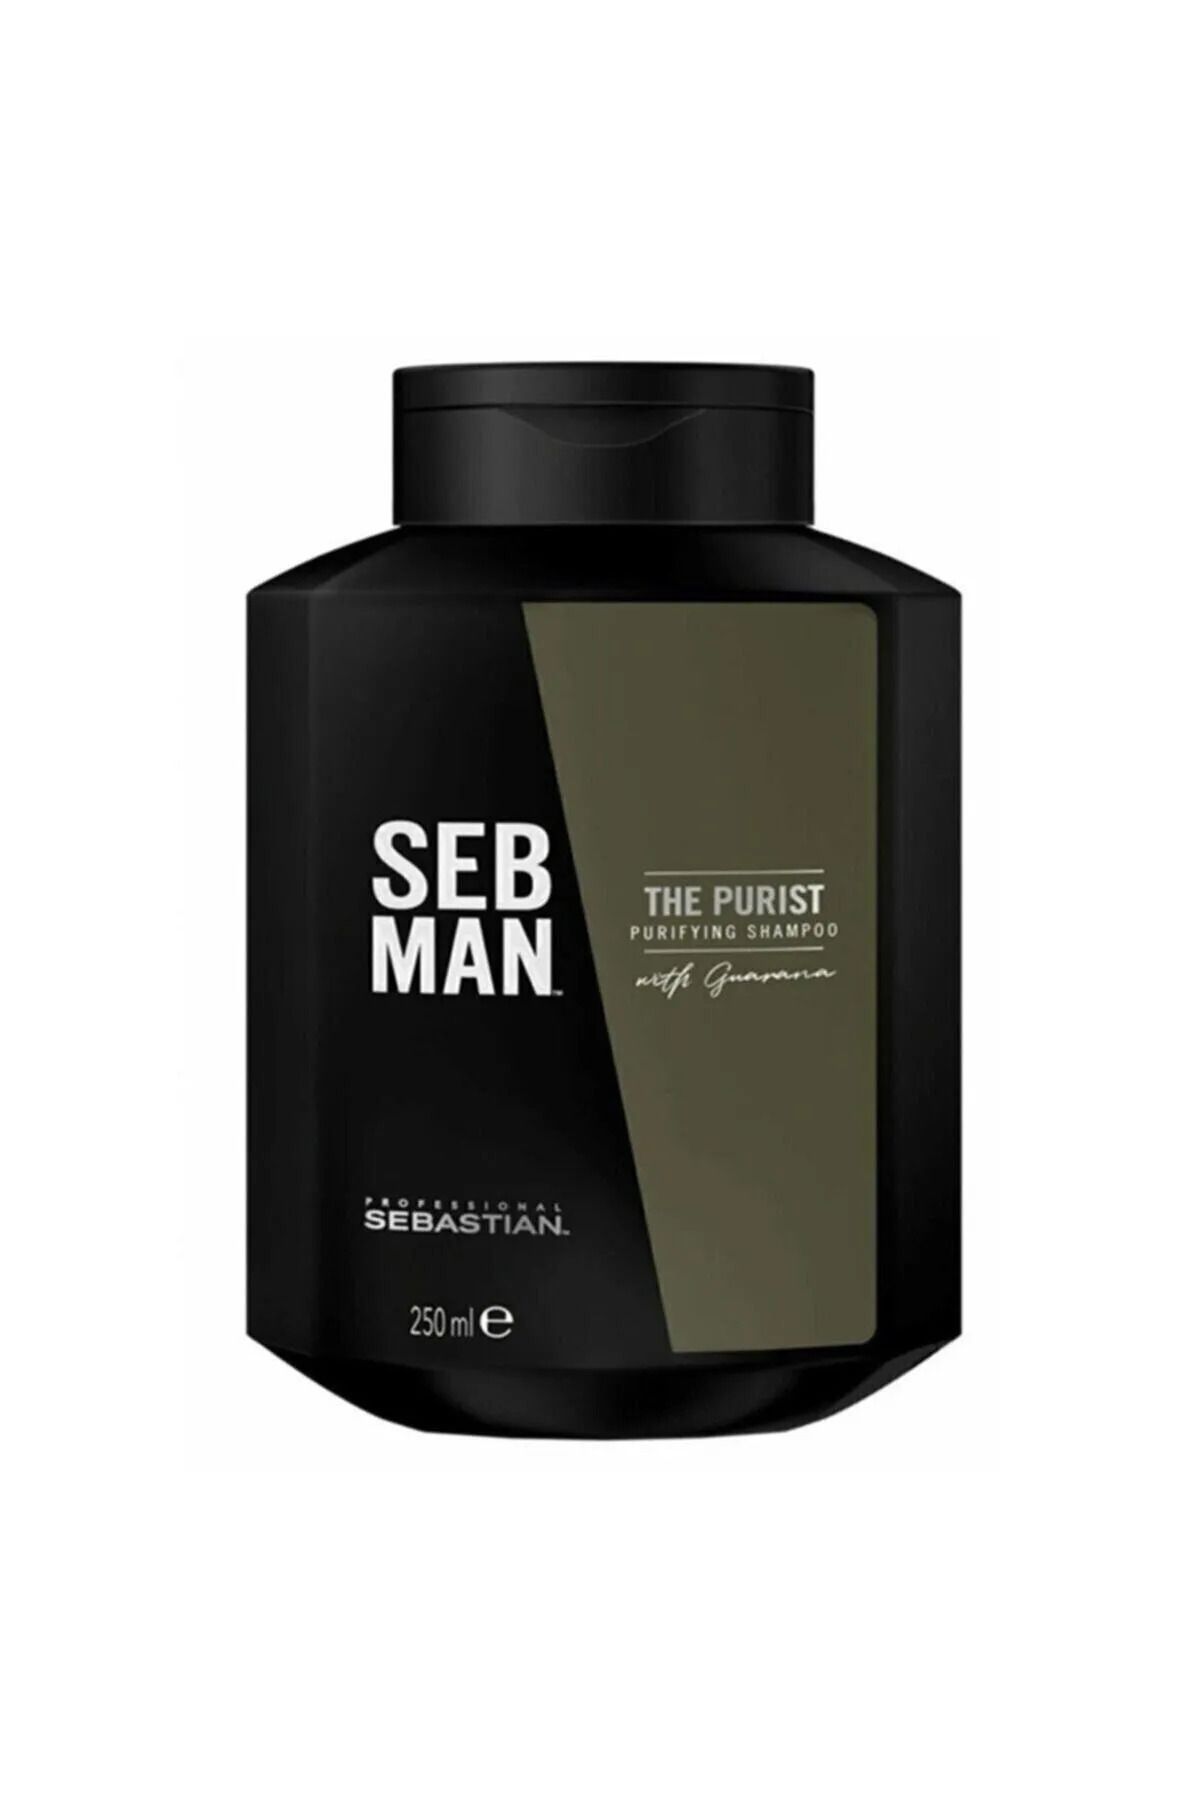 Sebastian SEB MAN The Purist- Zengin İçerikli Erkeklere Özel Kepek Önleyici Şampuan 250 ml SED679463113195228